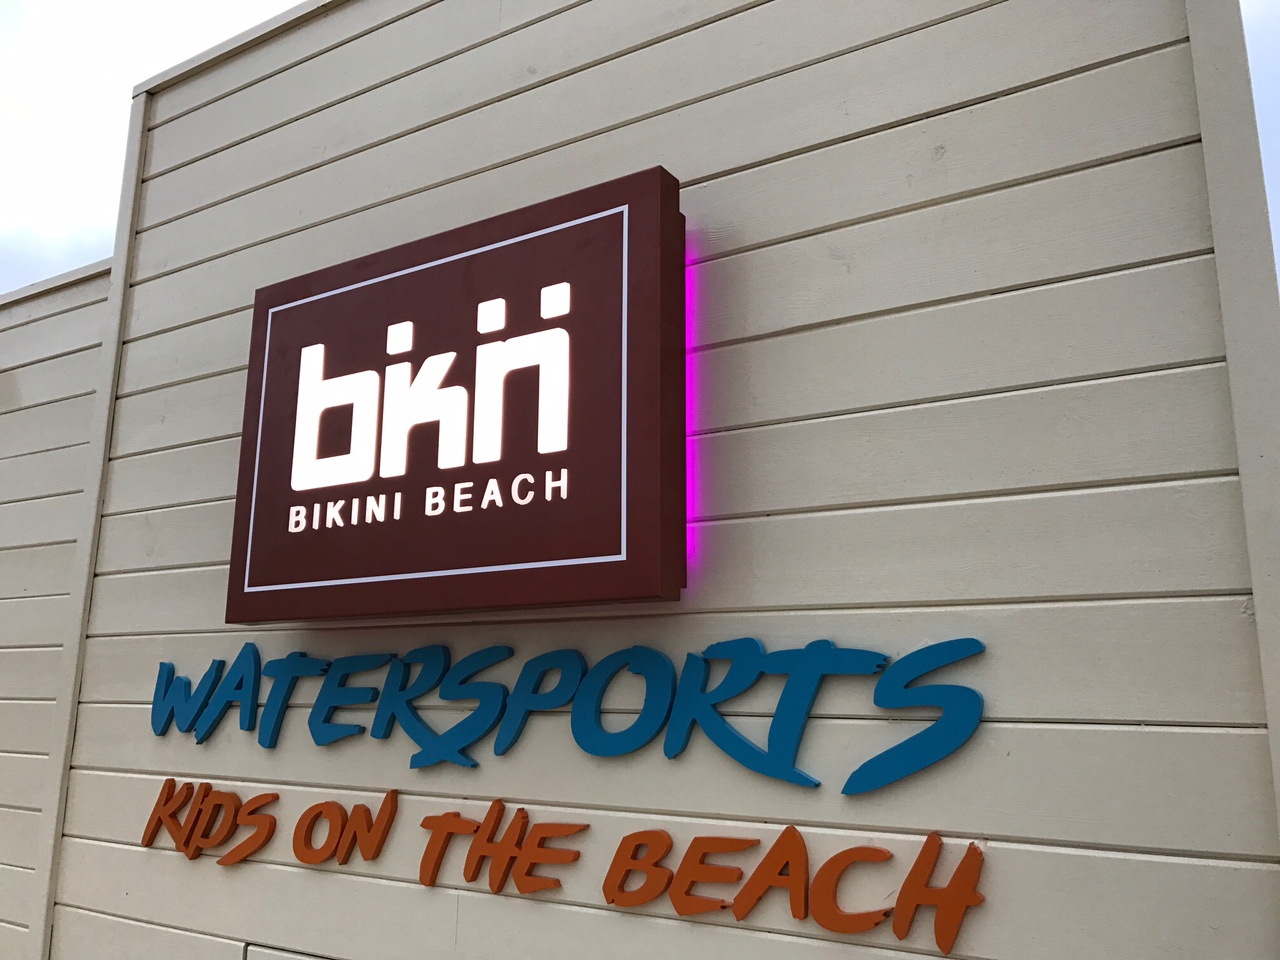 Bikini beach sign